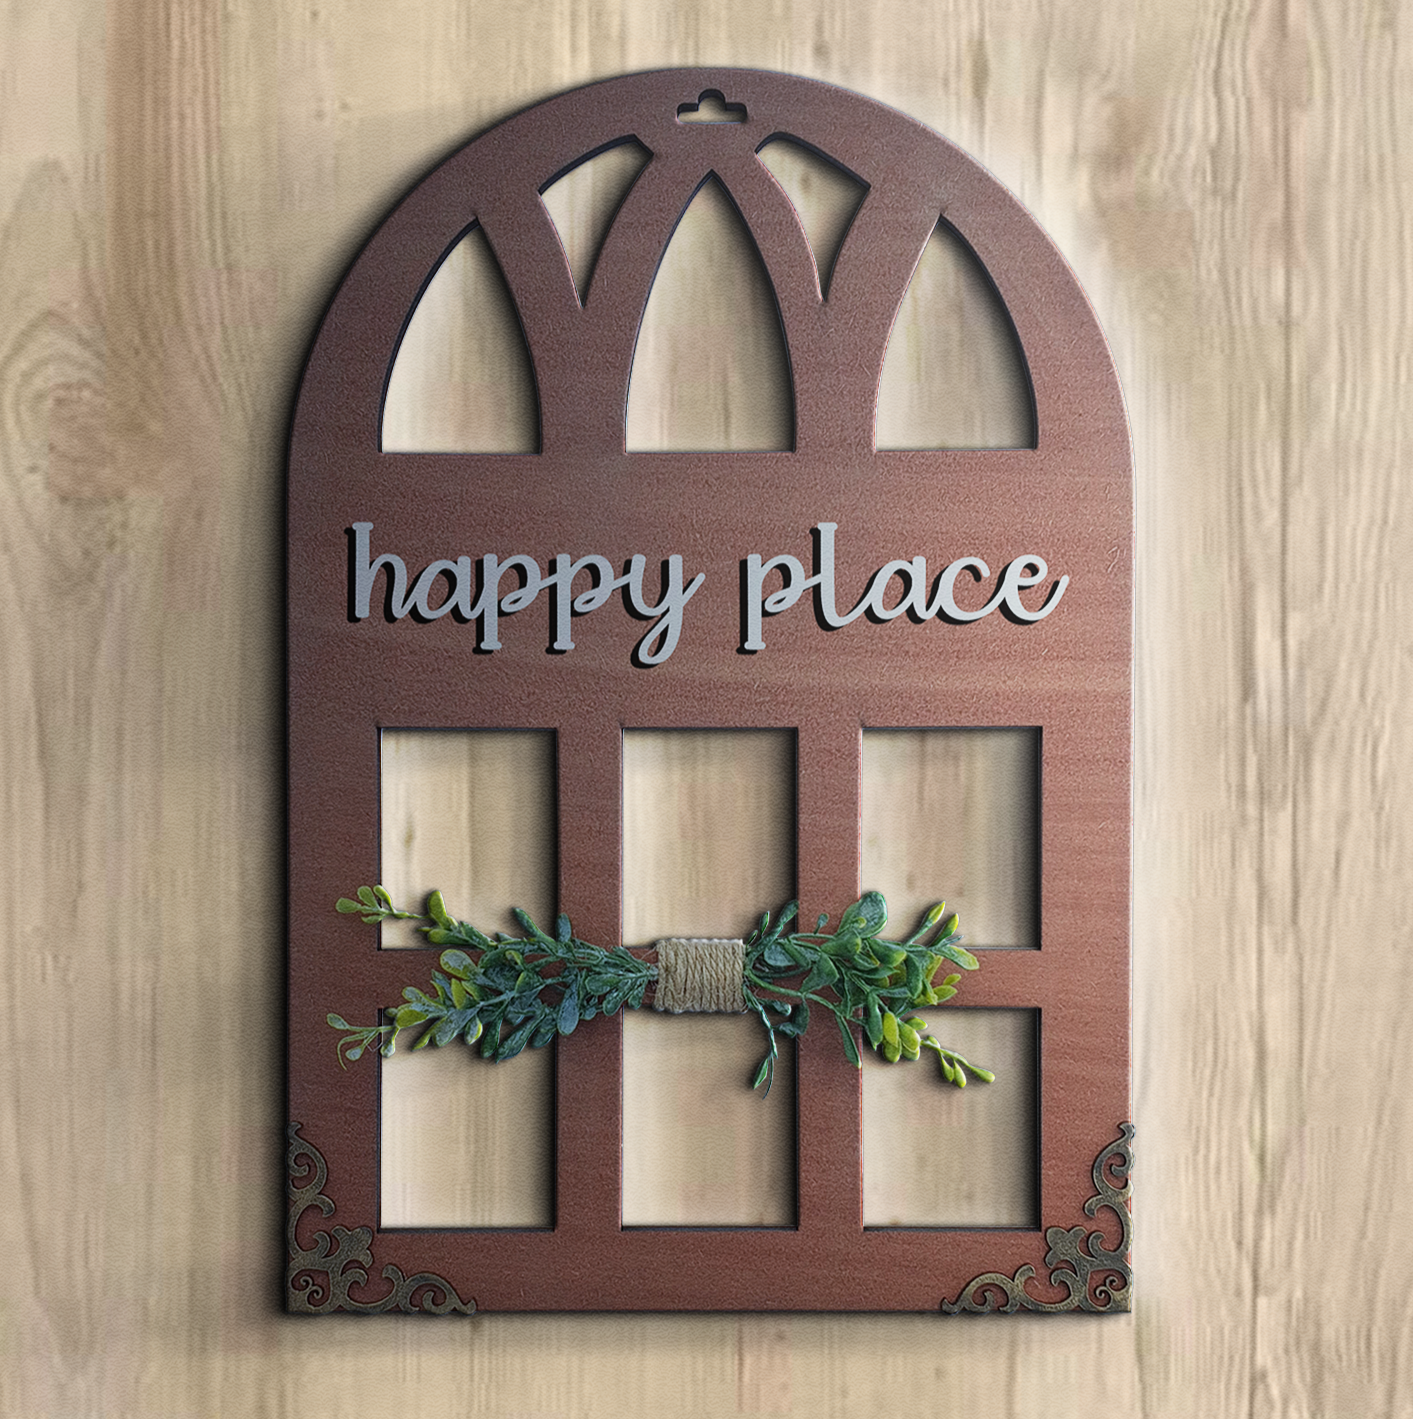 Happy Place Window Wall Art